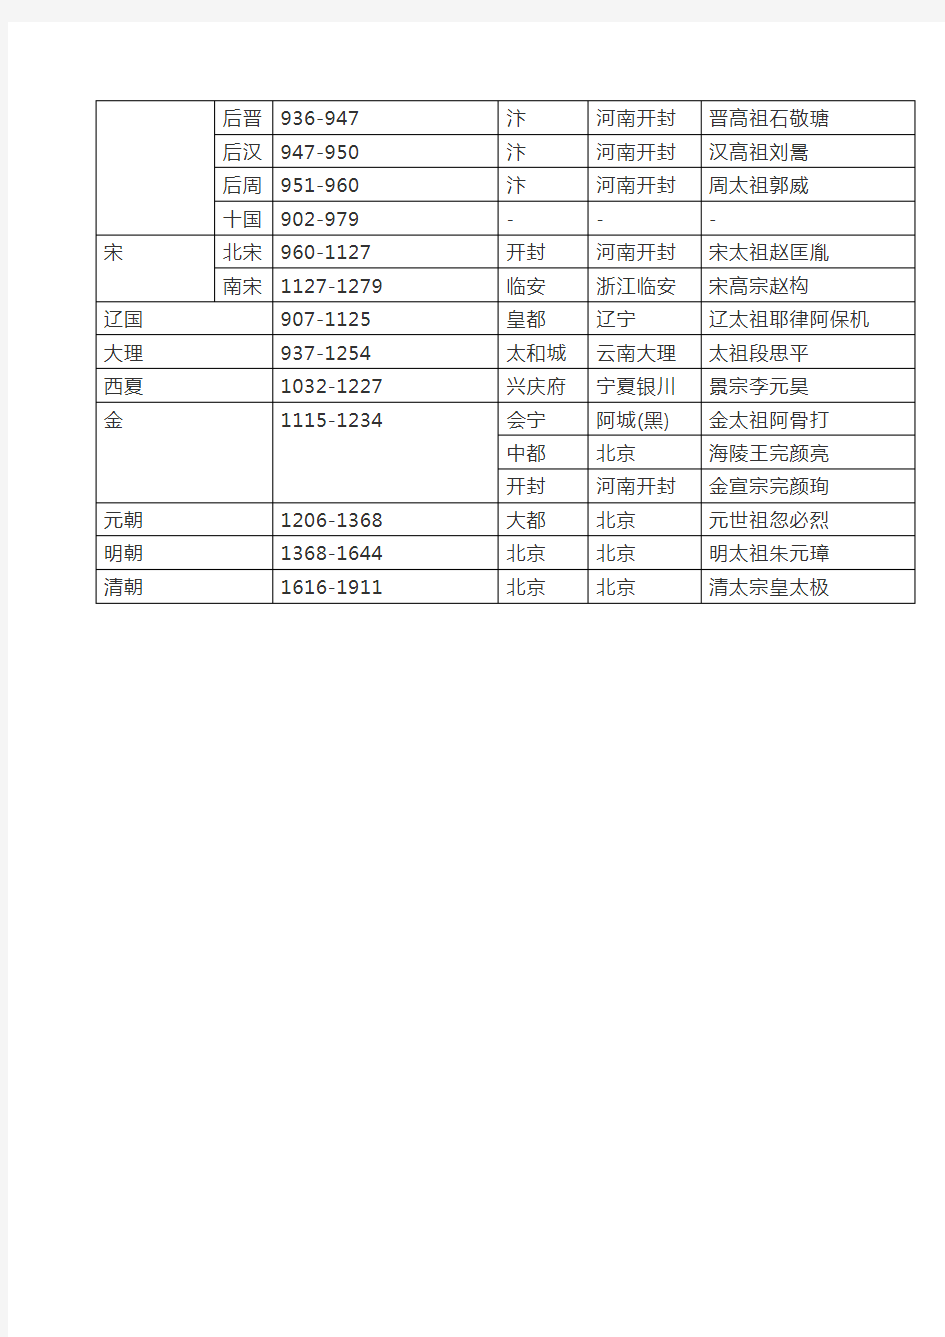 中国朝代顺序完整表 中国历史朝代顺序表